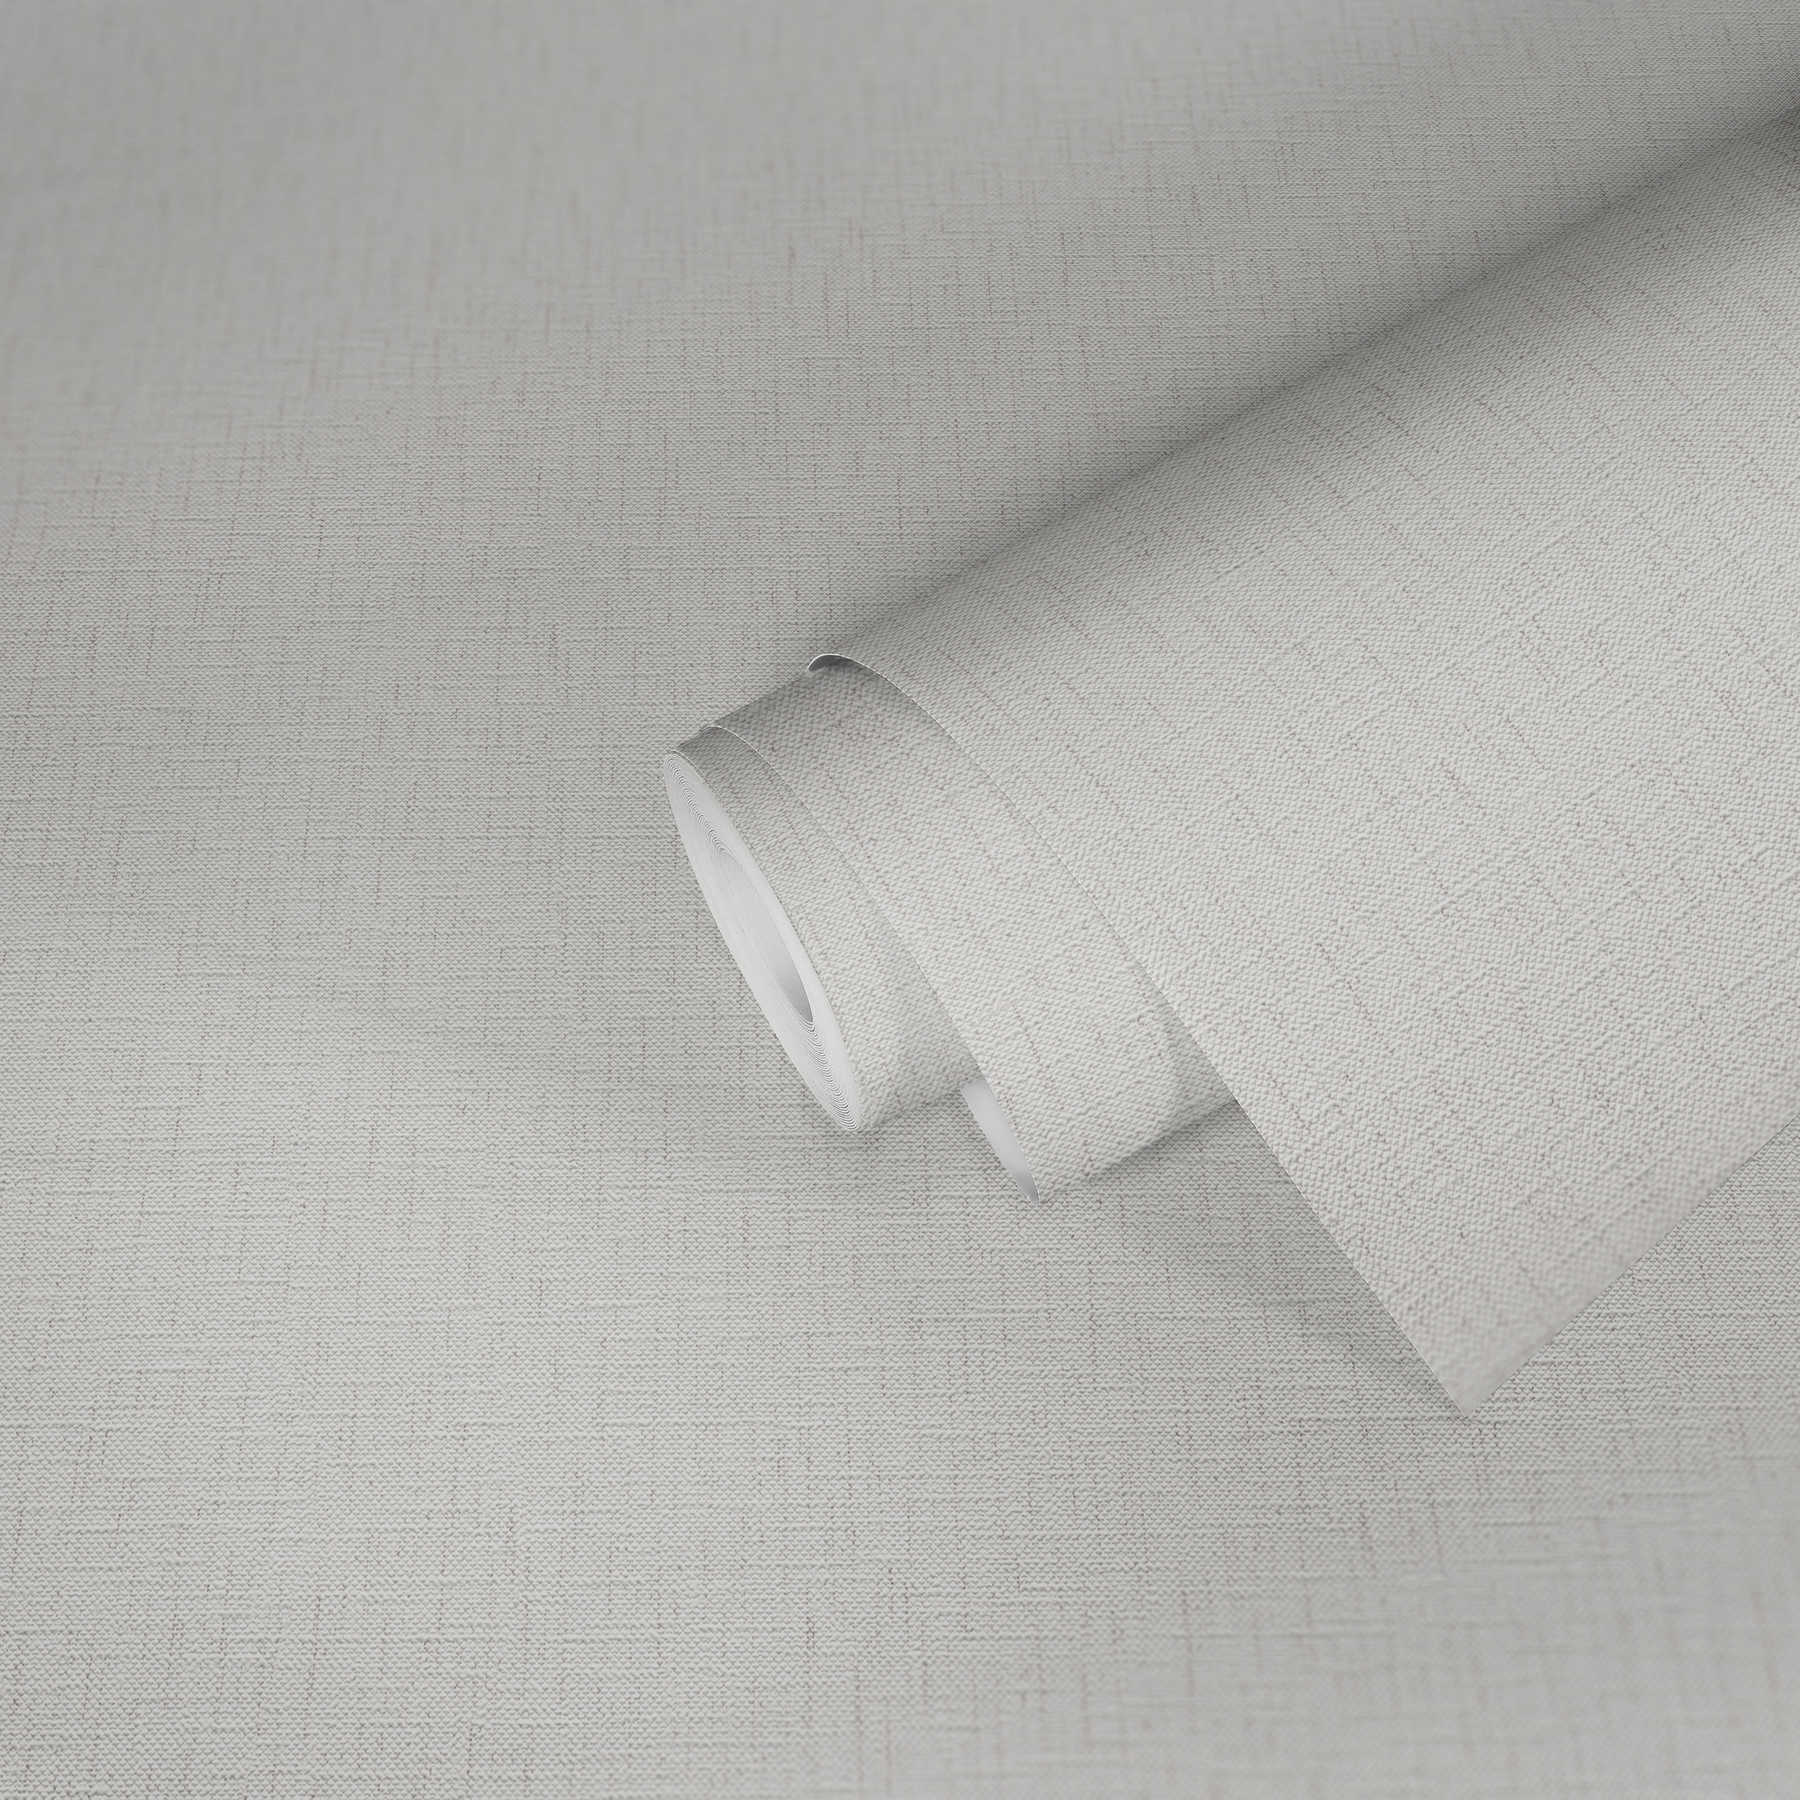             Textiel look Papierbehang met bonte kleuren - grijs, wit
        